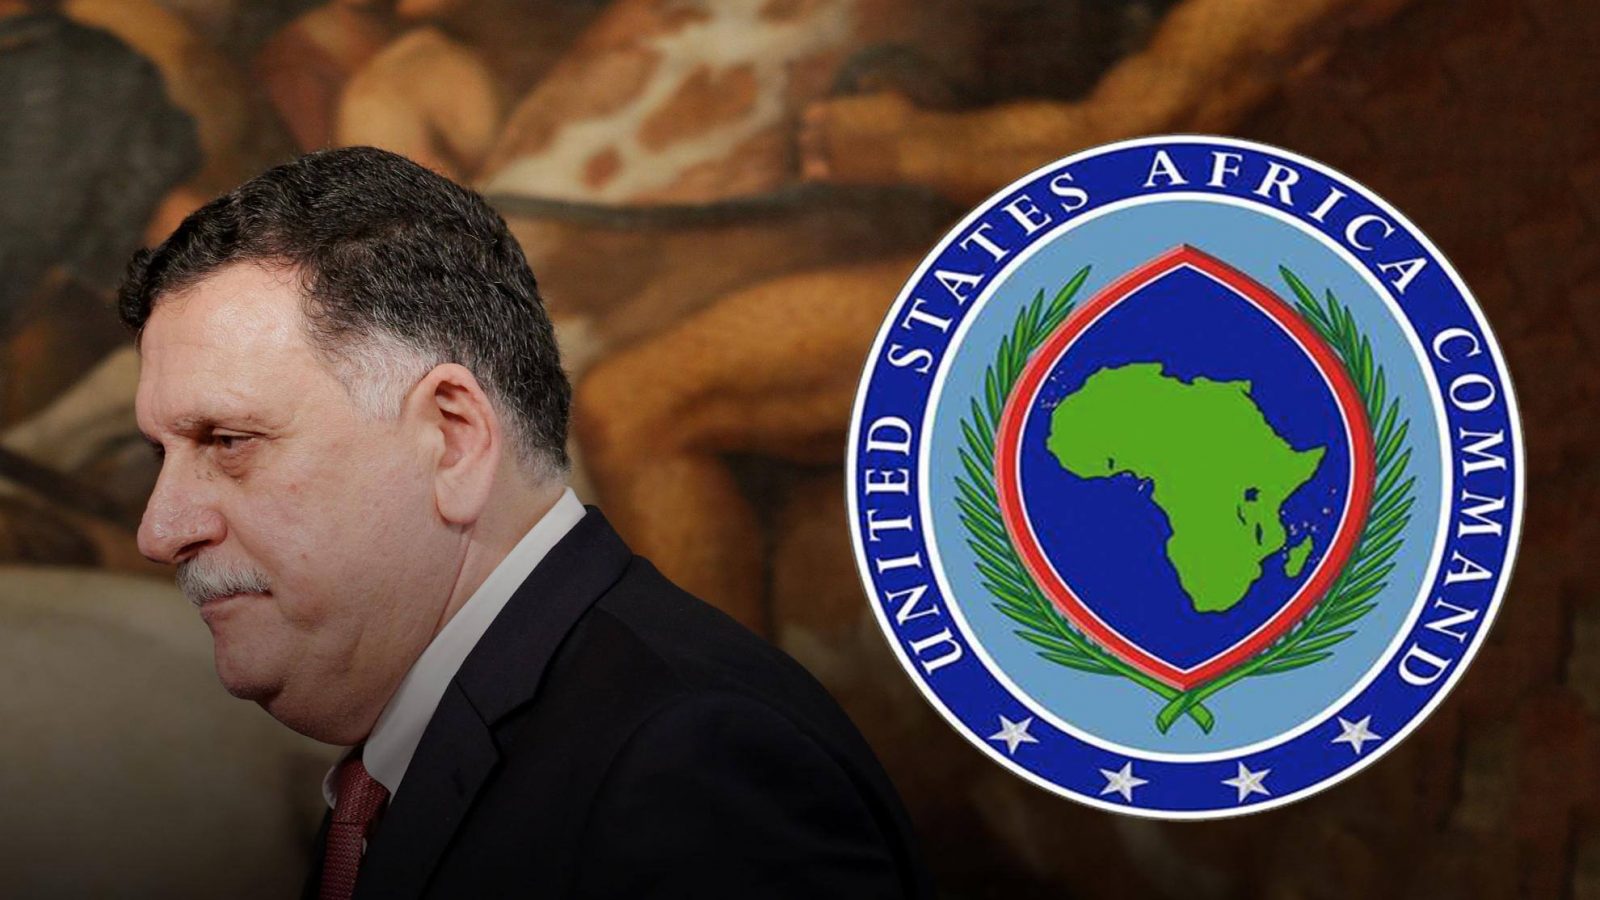 ليبيا: اجتماع مغلق بين السراج ورئيس “الأفريكوم” في زوارة